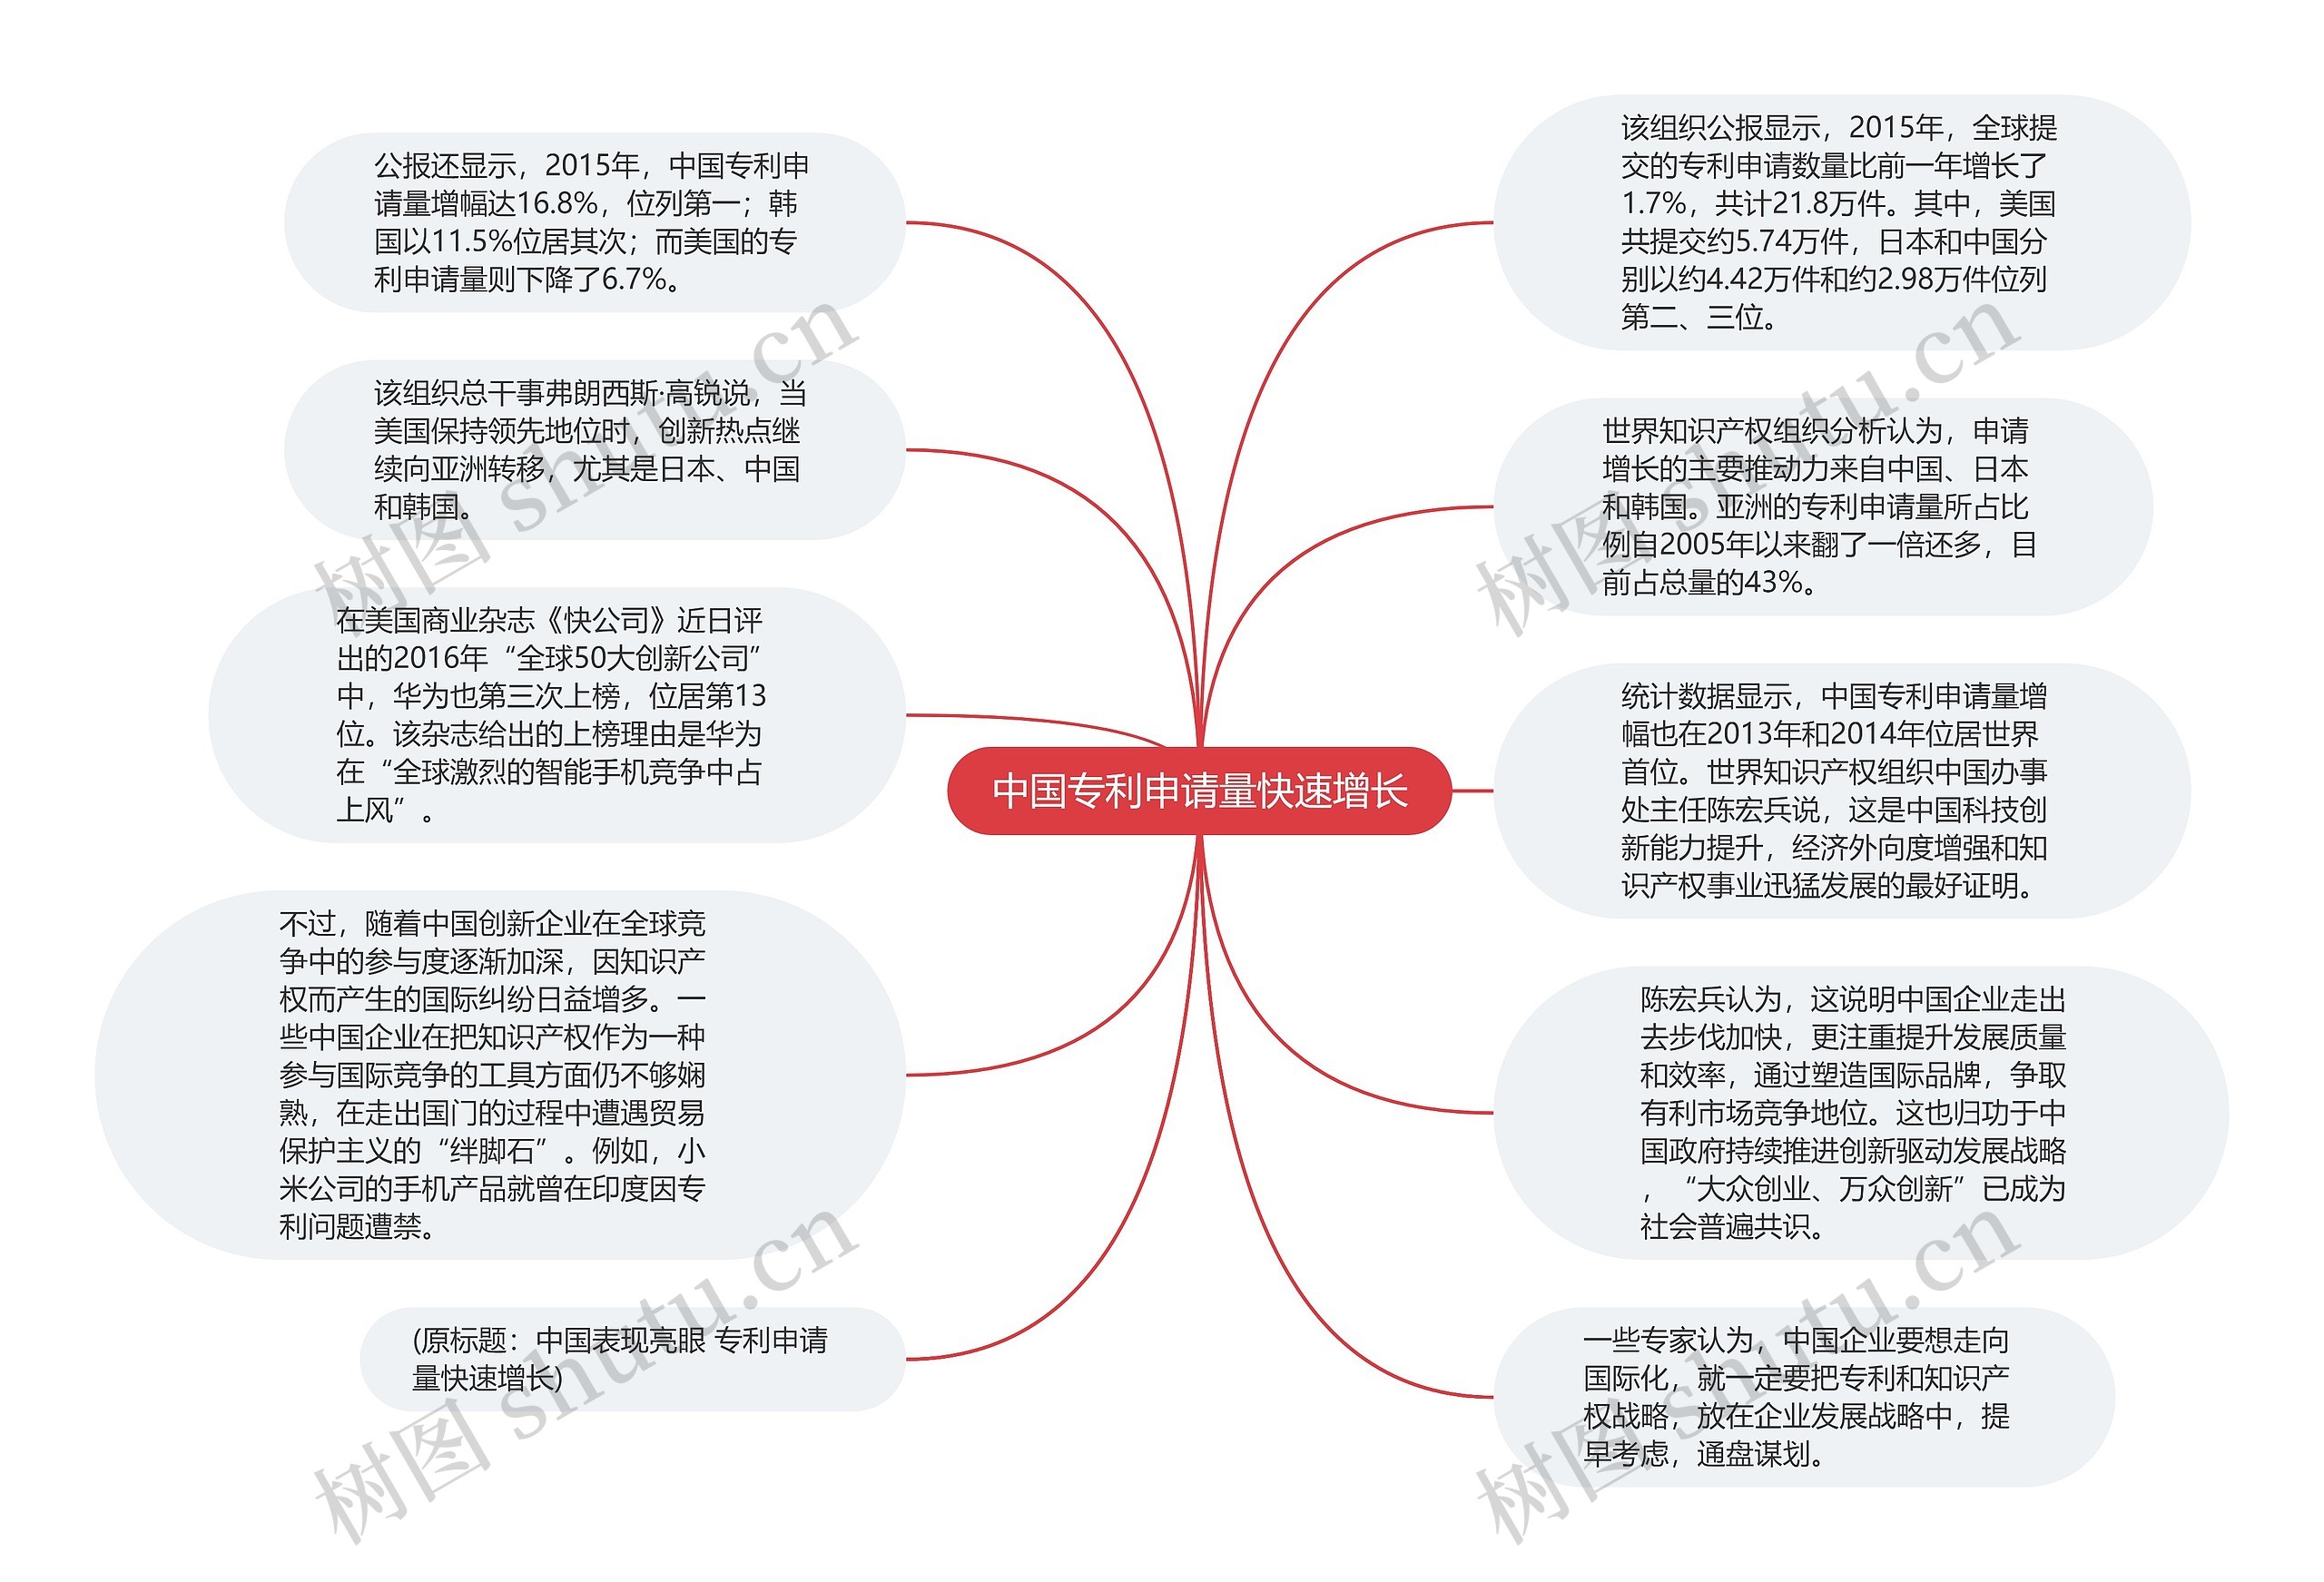 中国专利申请量快速增长思维导图